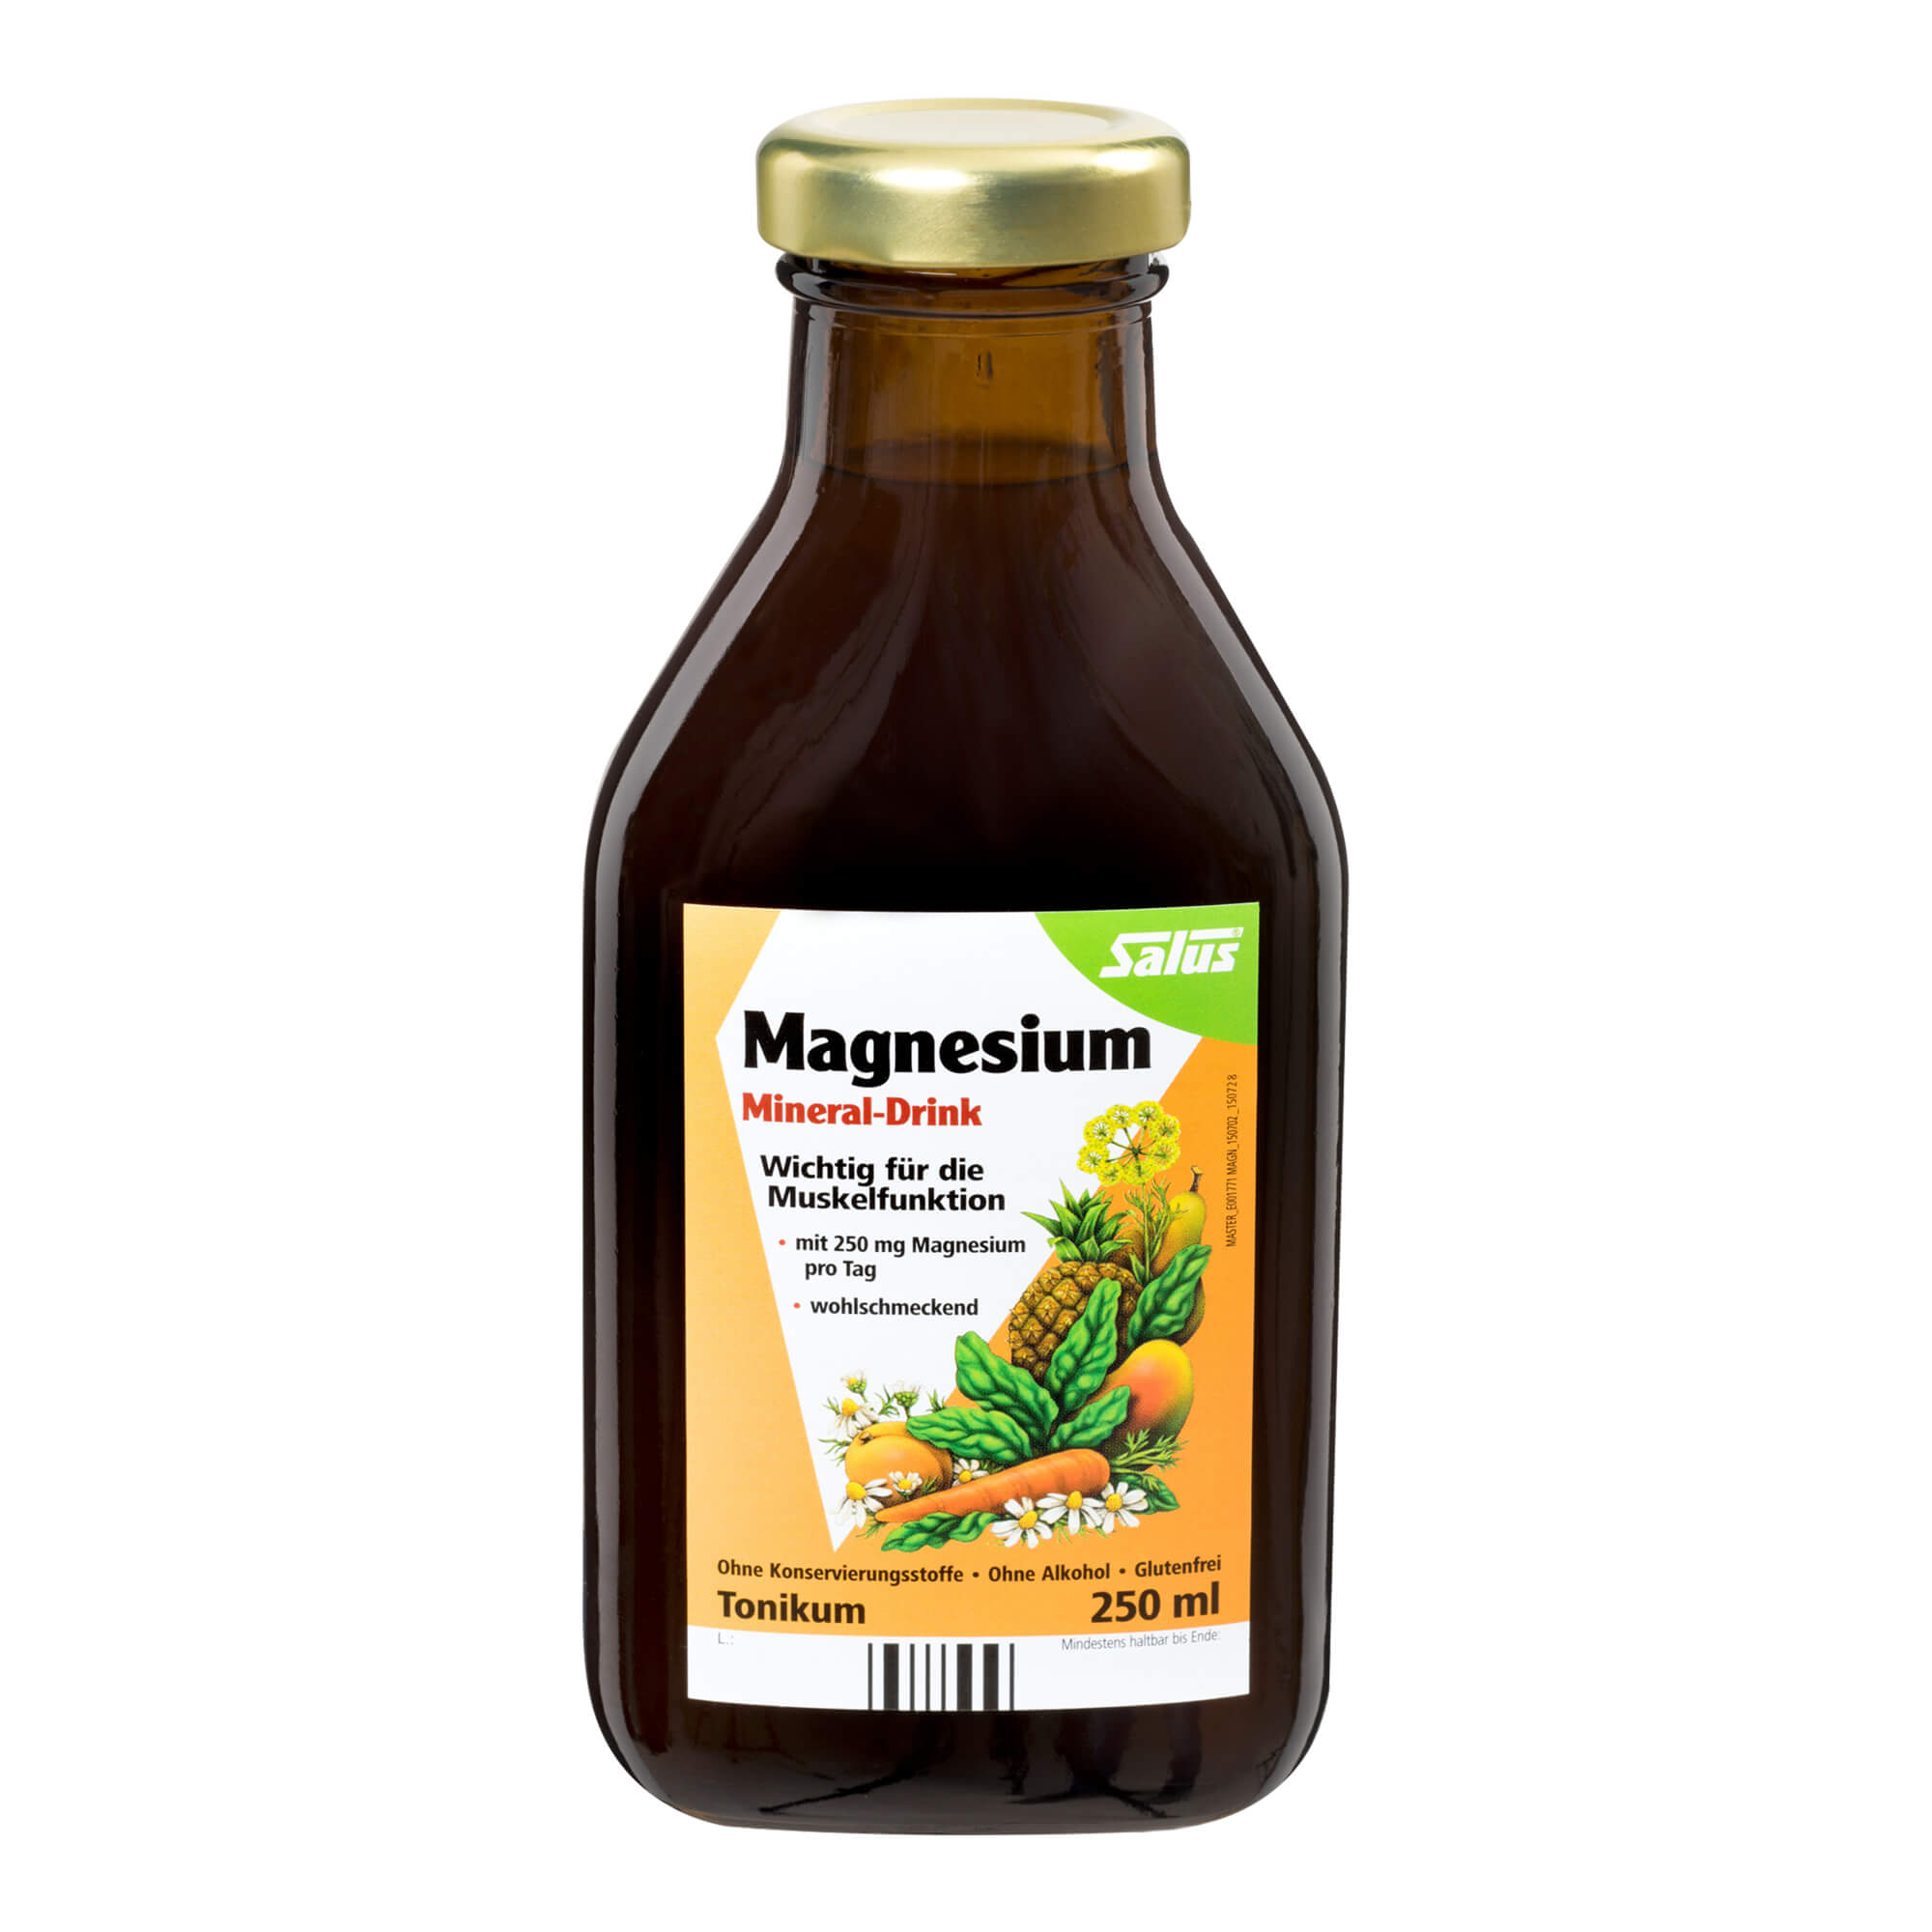 Nahrungsergänzungsmittel mit Magnesium. Als Tonikum. Schmeckt natürlich-fruchtig.